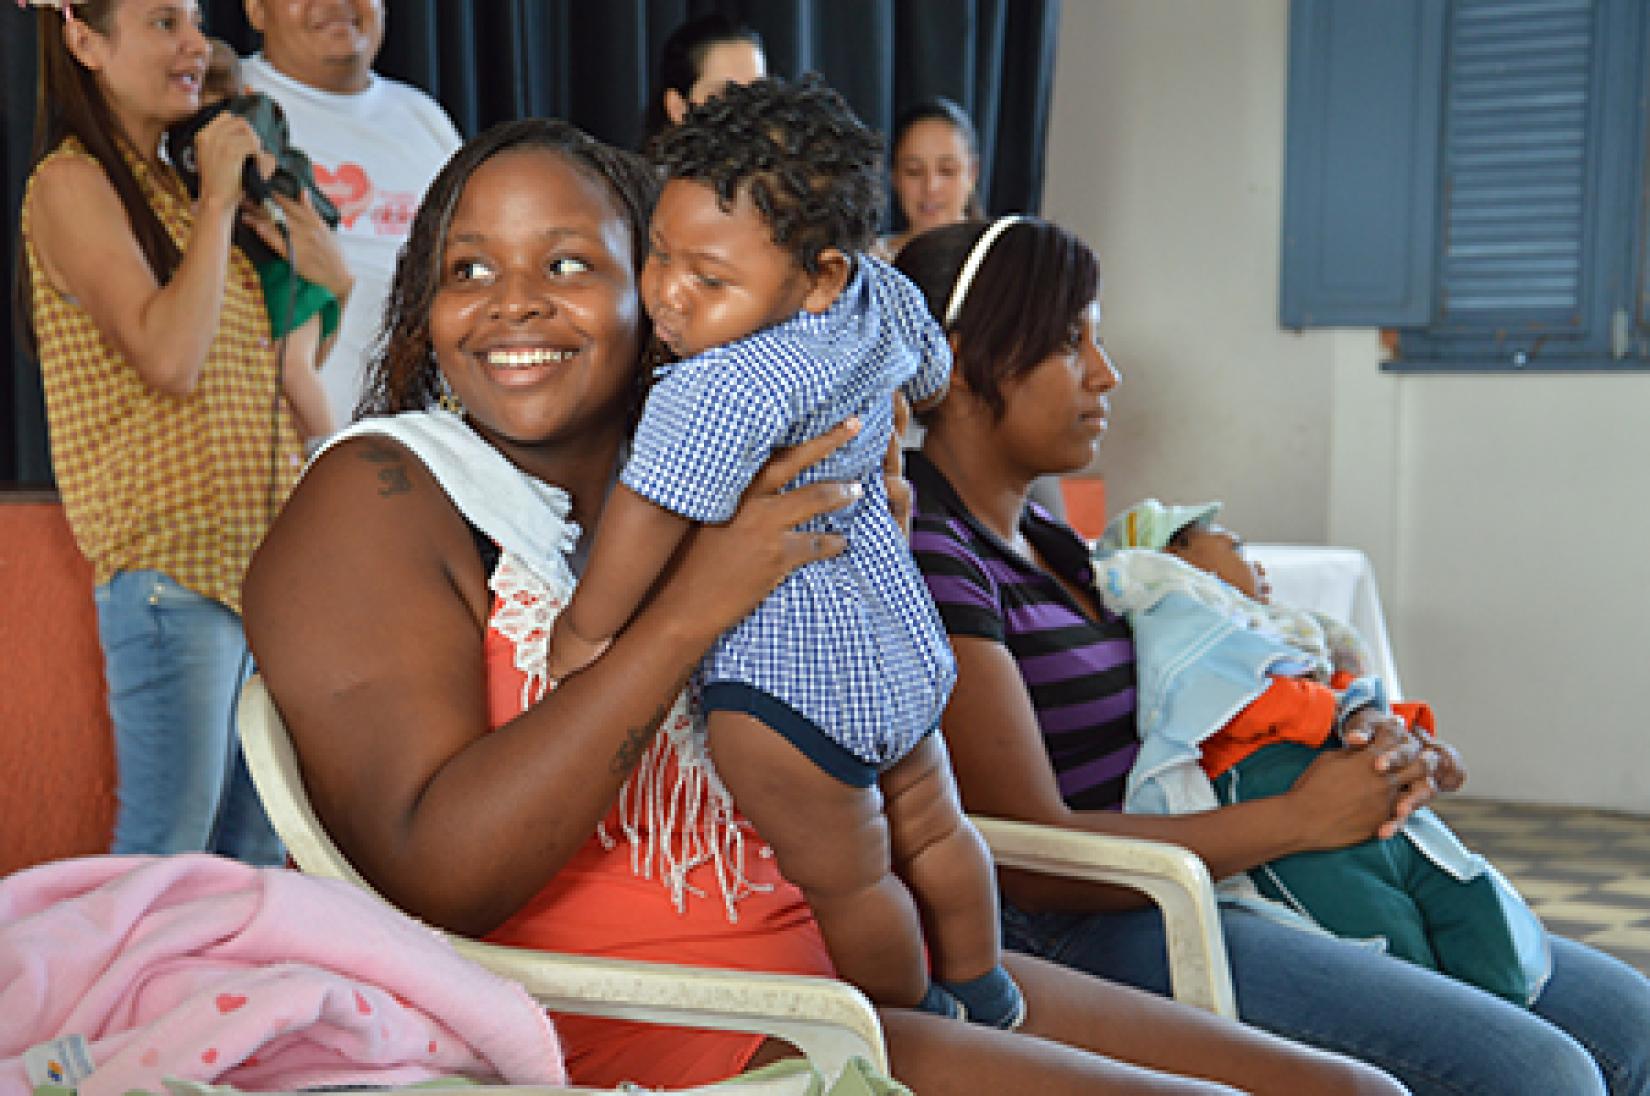 Crianças com microcefalia precisam de acompanhamento continuado e estímulos específicos para que seu desenvolvimento seja garantido. Foto: UNFPA Brasil / Tatiana Almeida